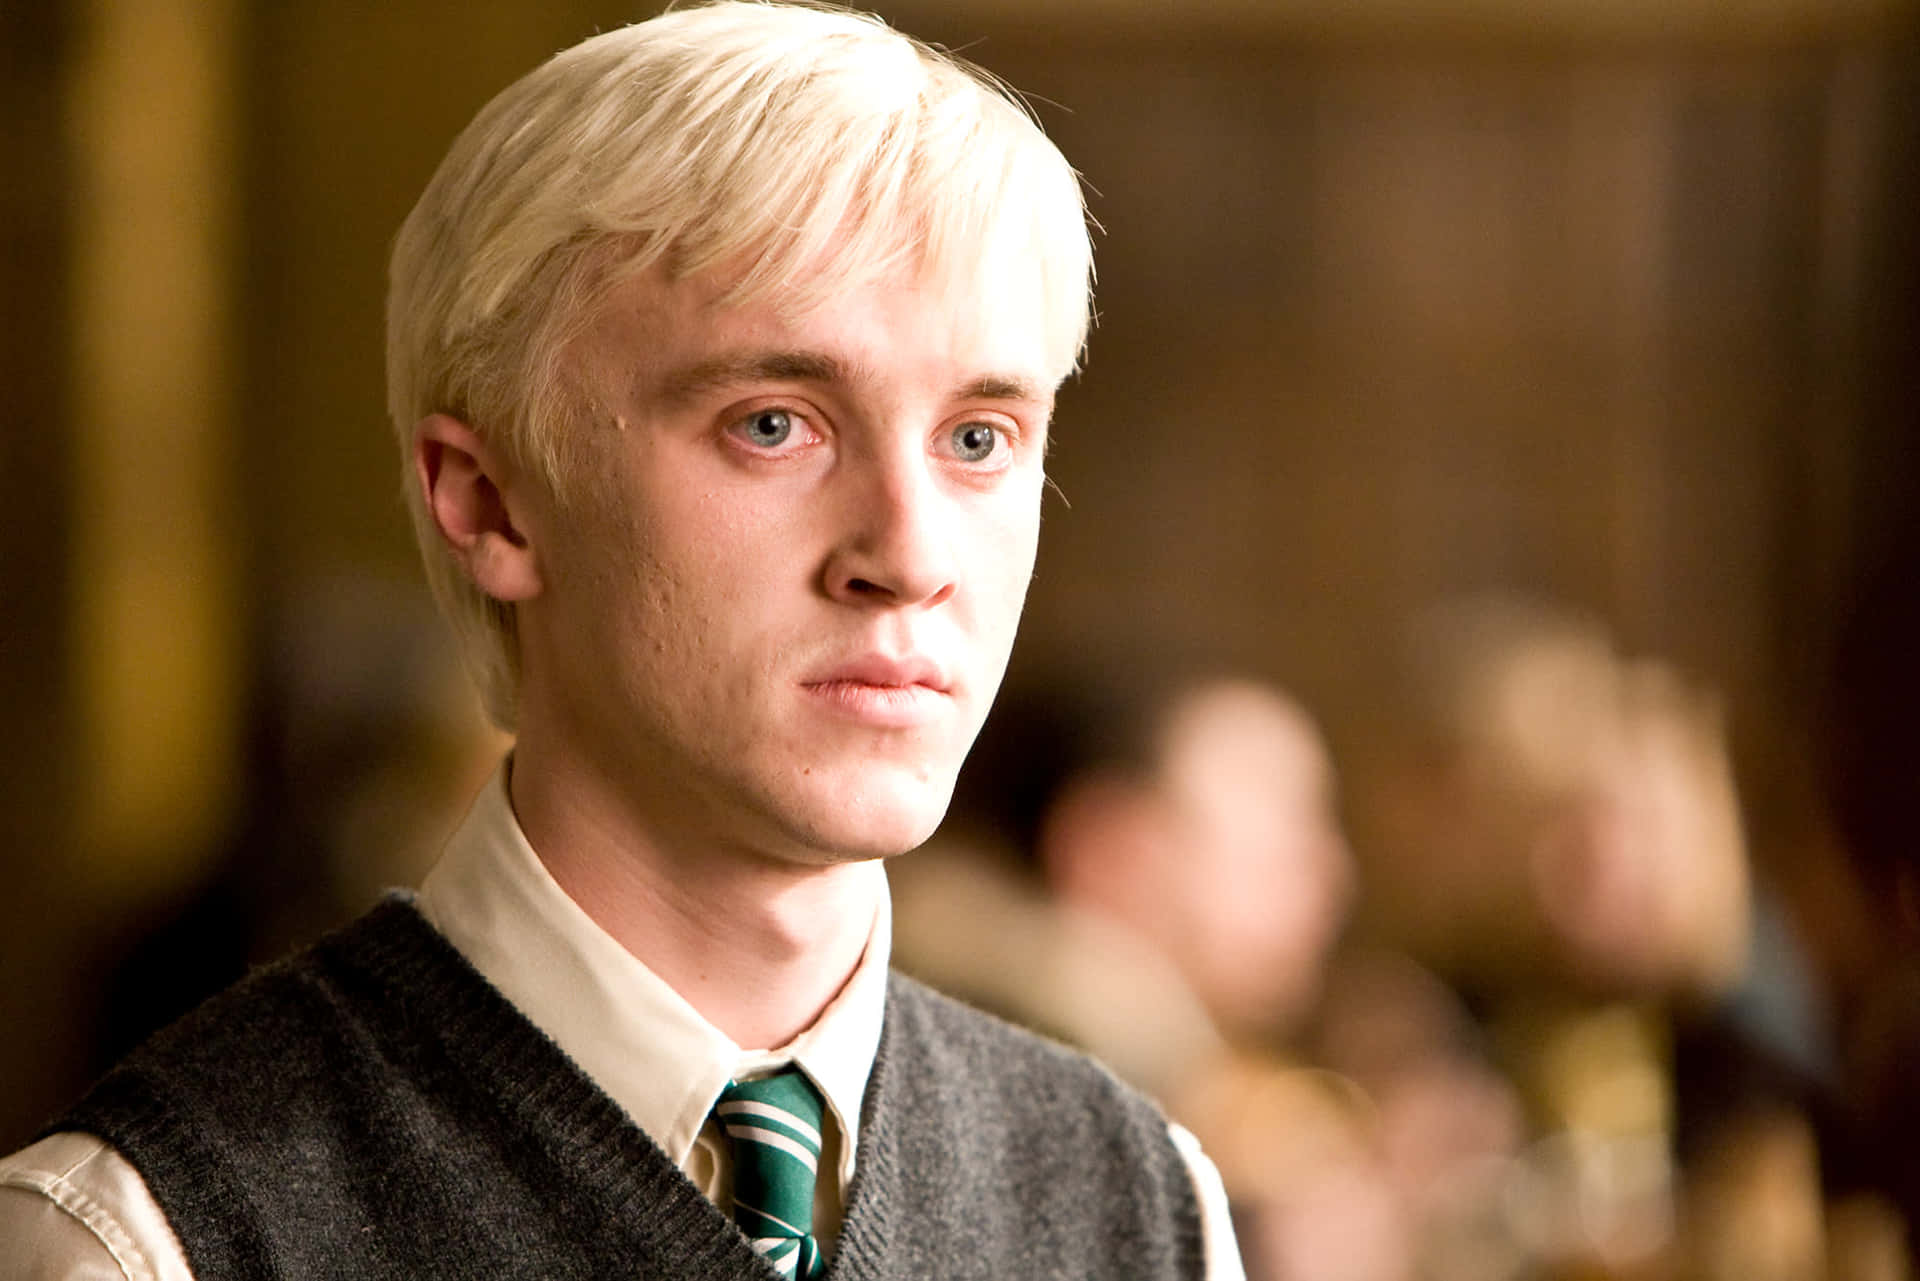 Draco Malfoy, the iconic Hogwarts student